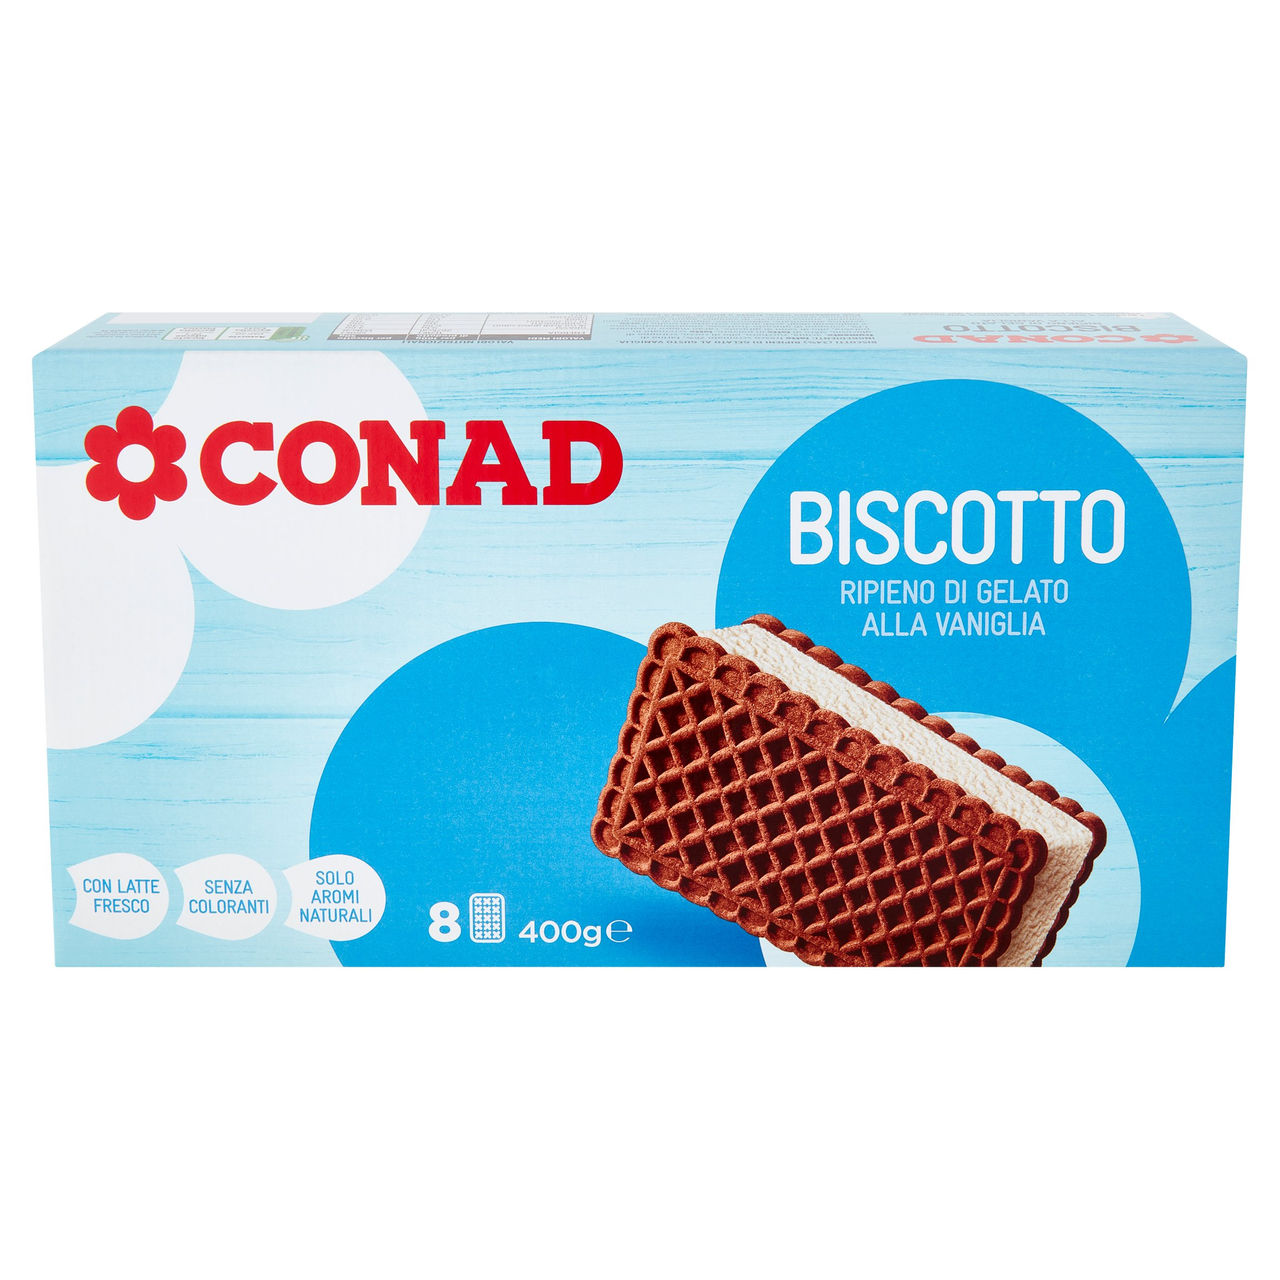 Biscotto con gelato alla vaniglia Conad online